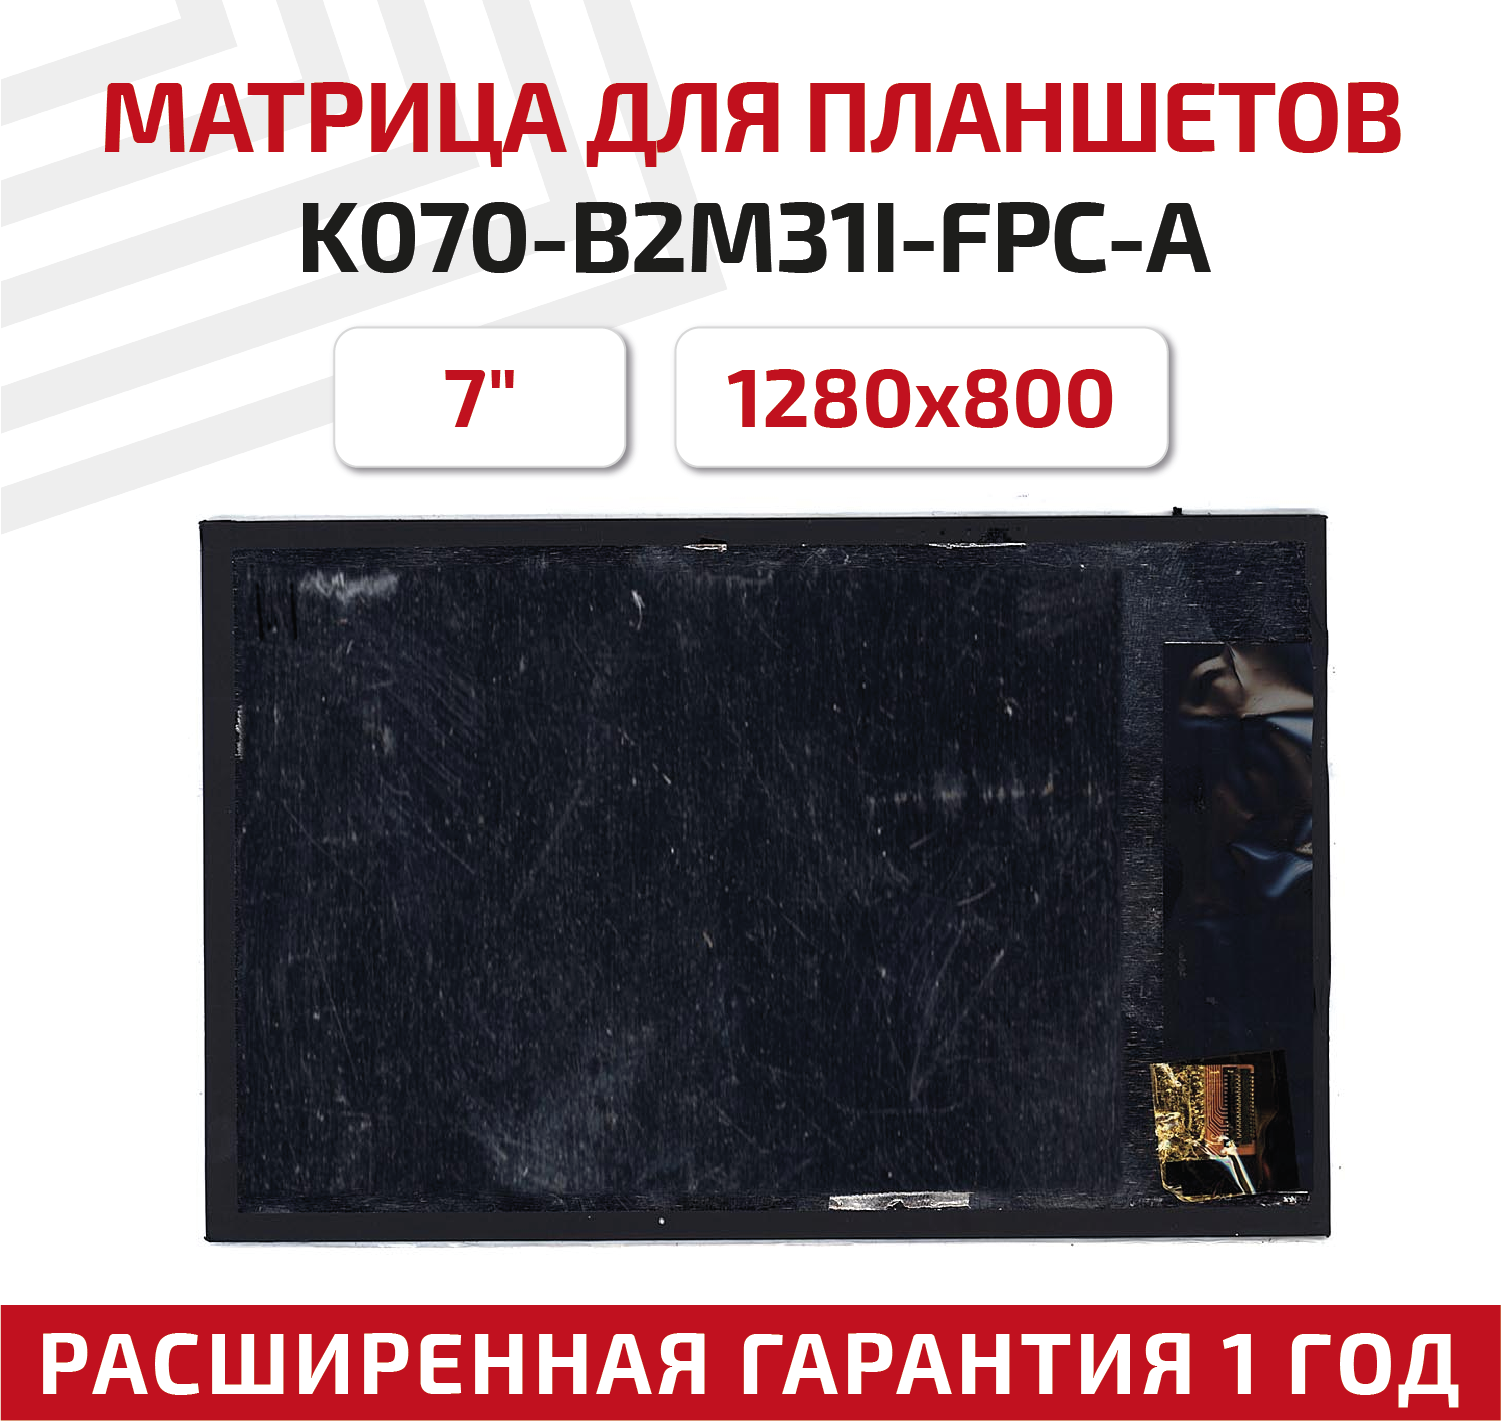 Матрица K070-B2M31I-FPC-A для планшета Irbis TZ732 7" 1280x800 глянцевая